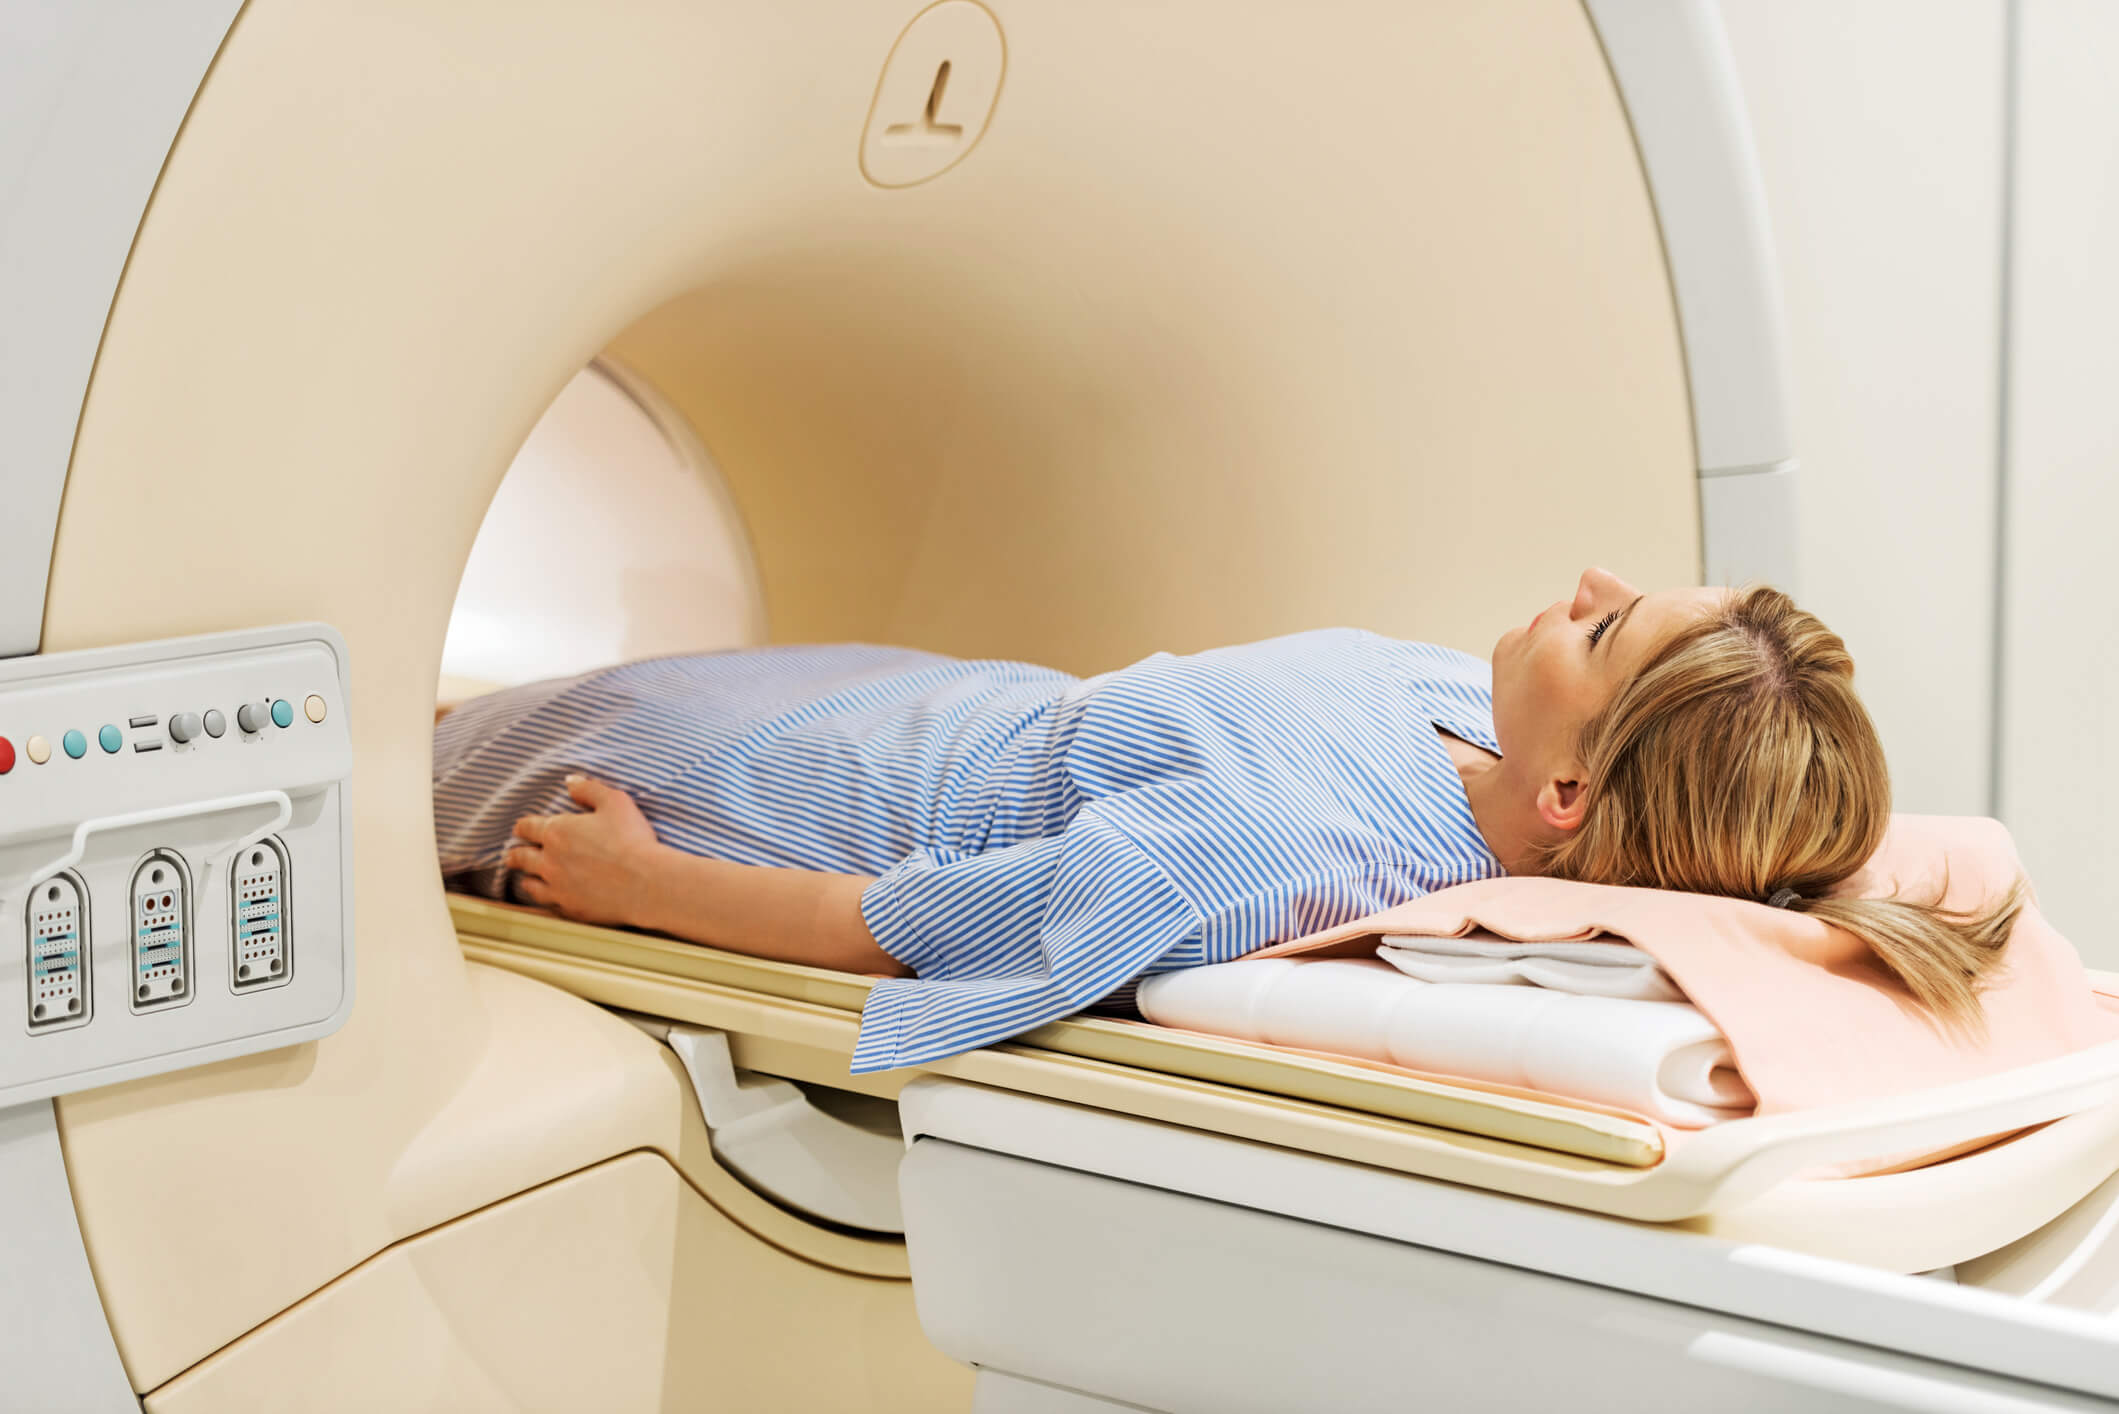 IRM lombaire : l'essentiel à savoir sur cet examen d'imagerie médicale